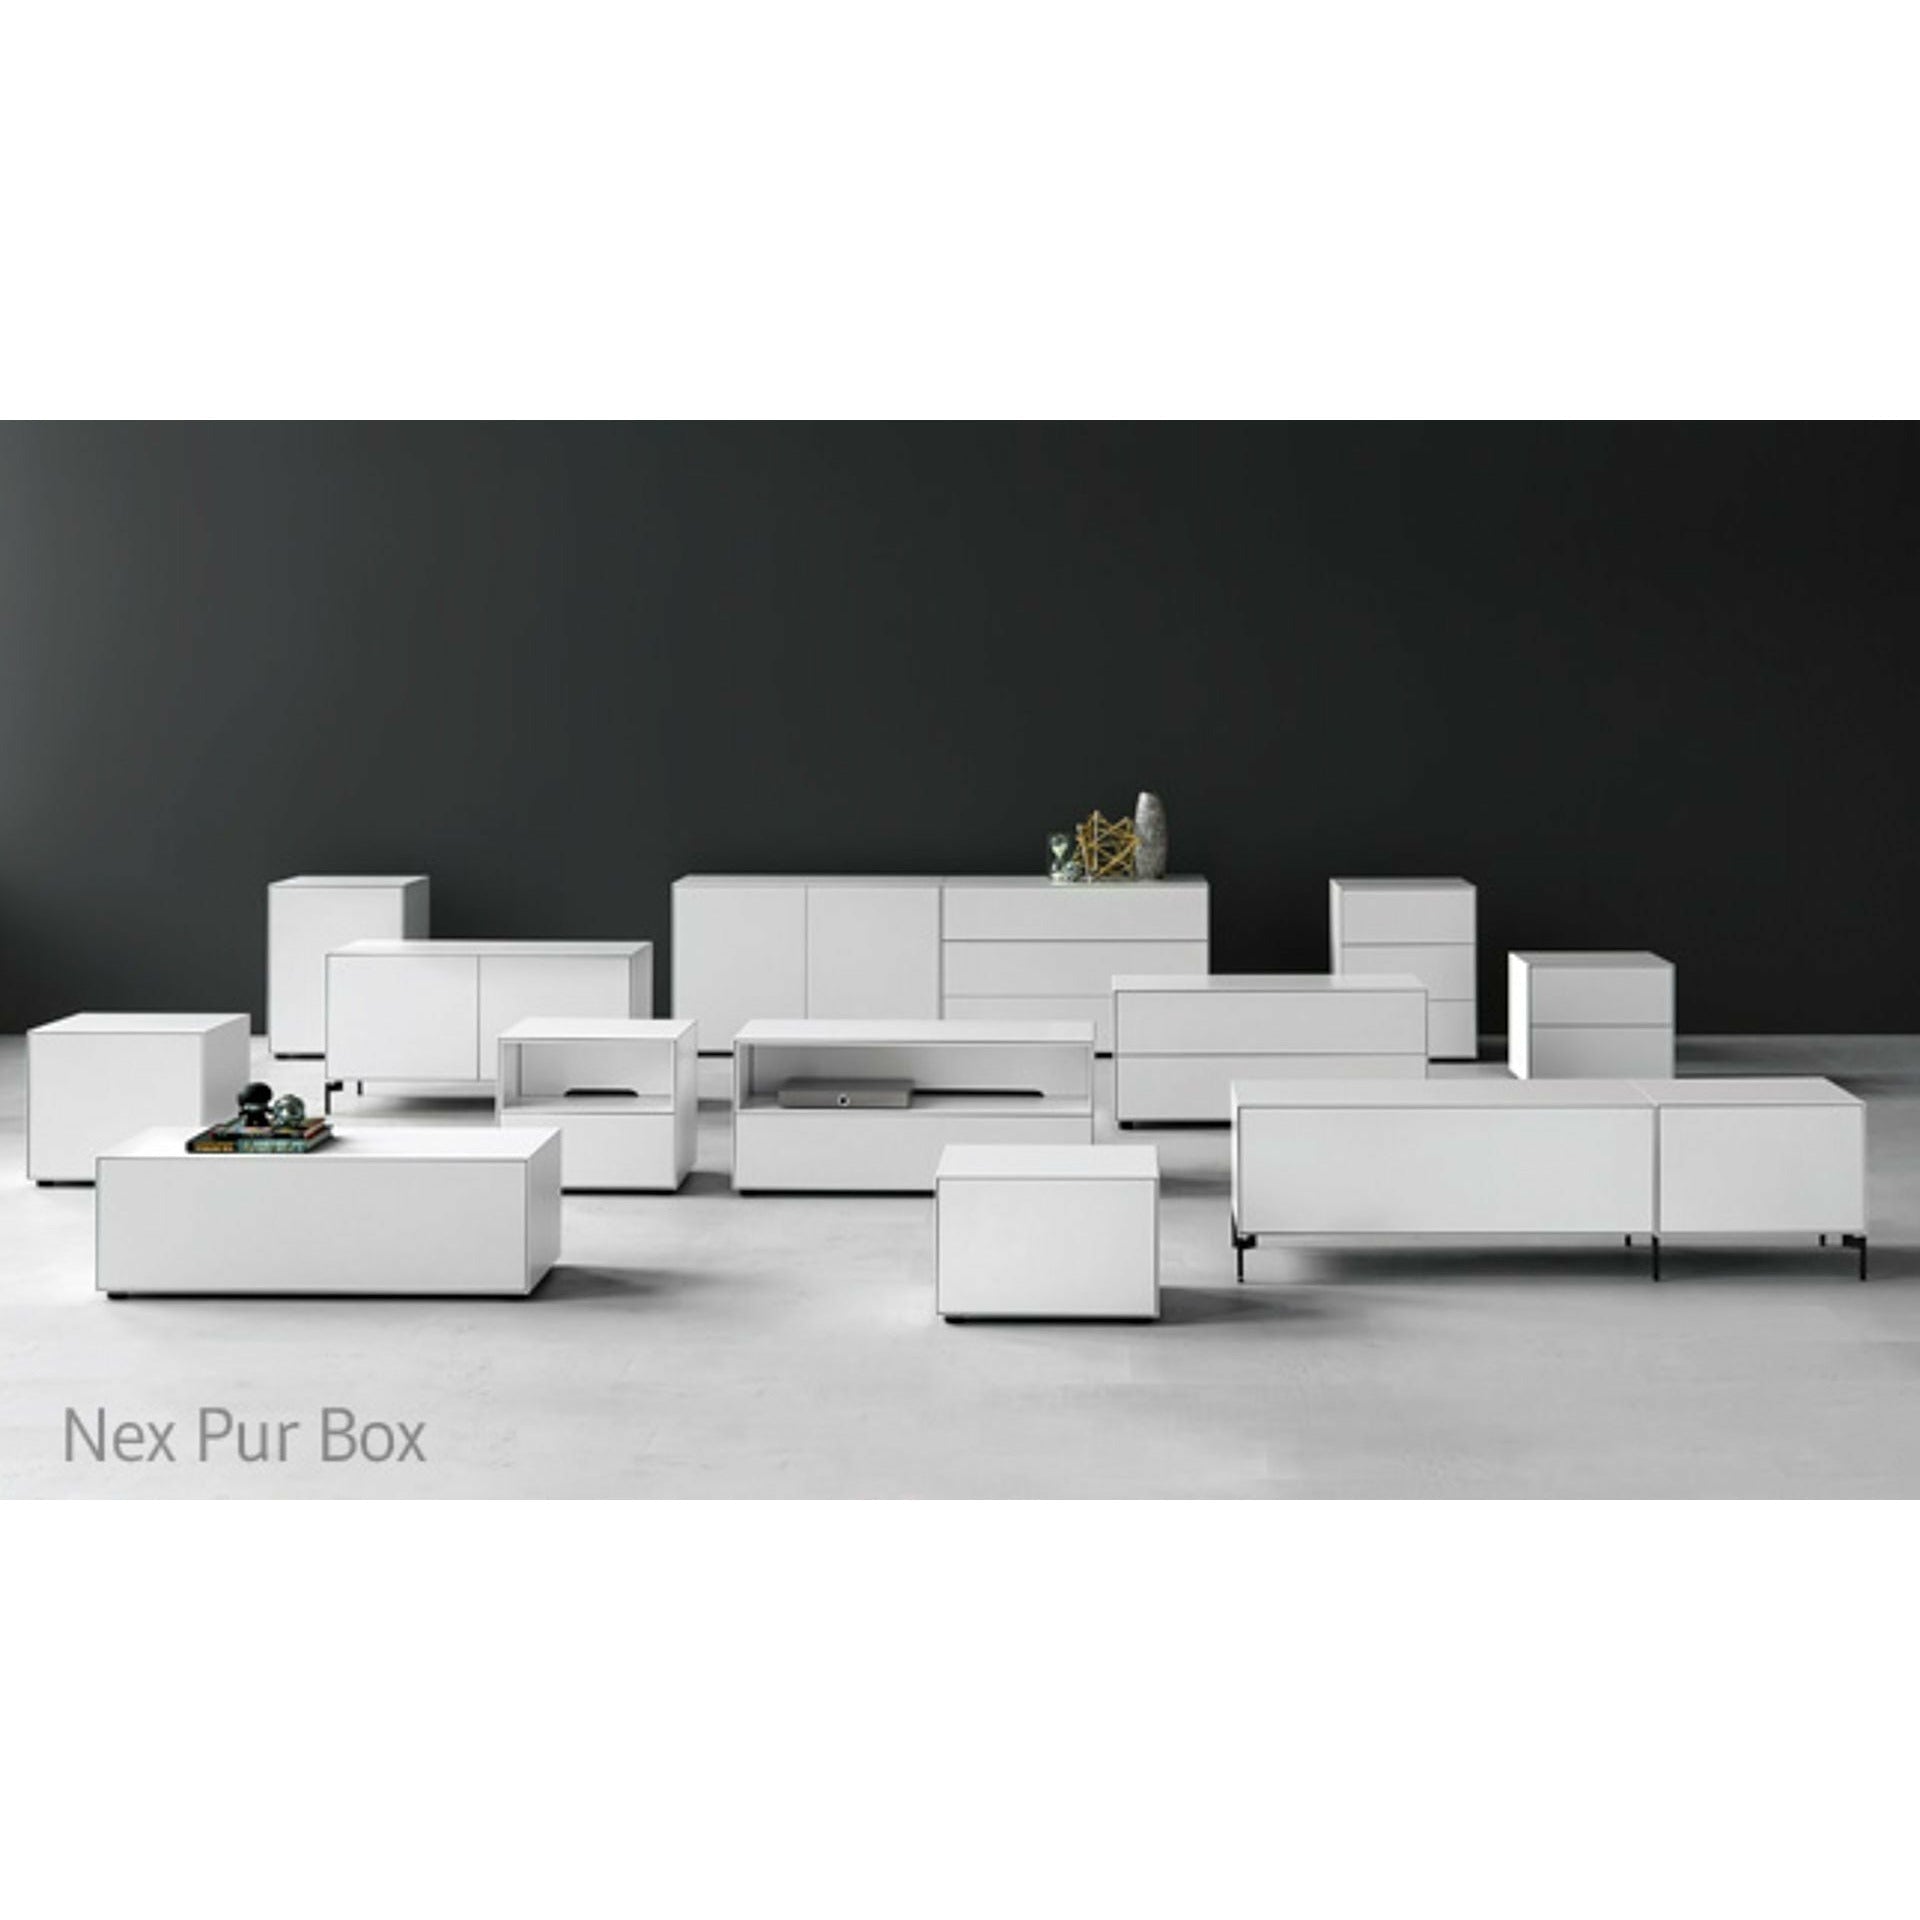 Piure Nex Pur Box Tür Hx B 50x120 Cm, 1 Einlegeboden